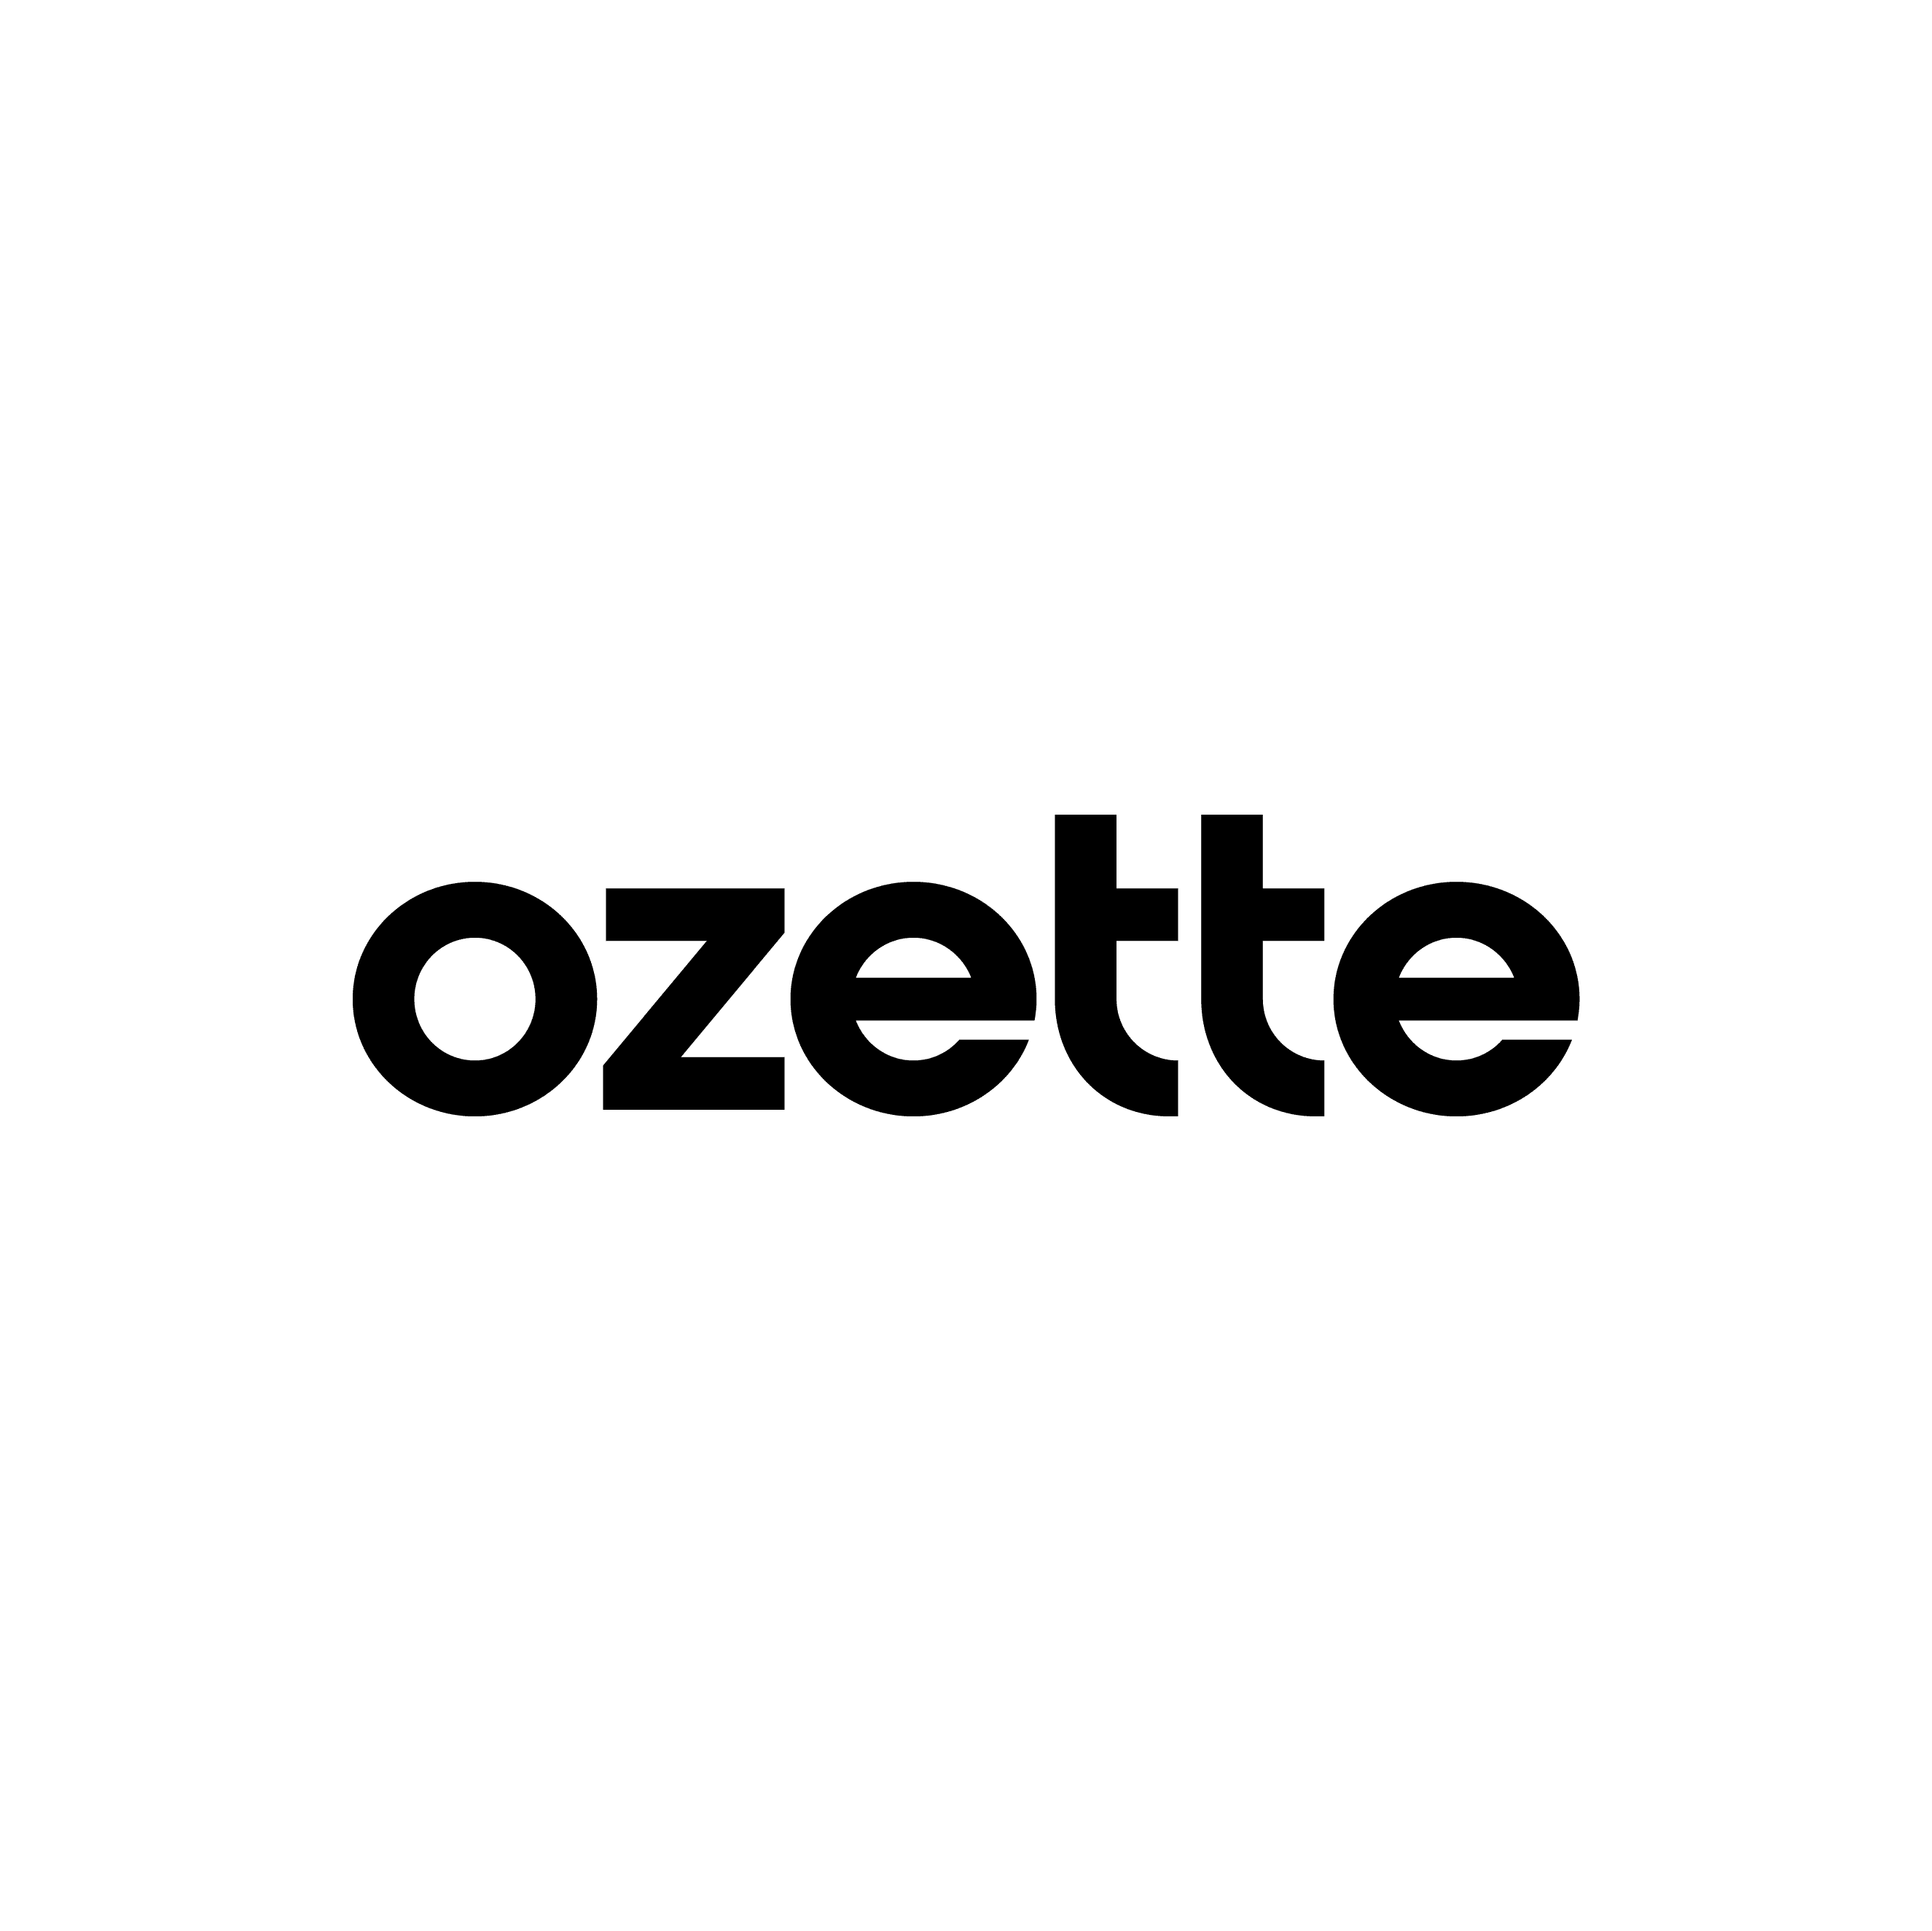 ozette_finallogotype_2022_black